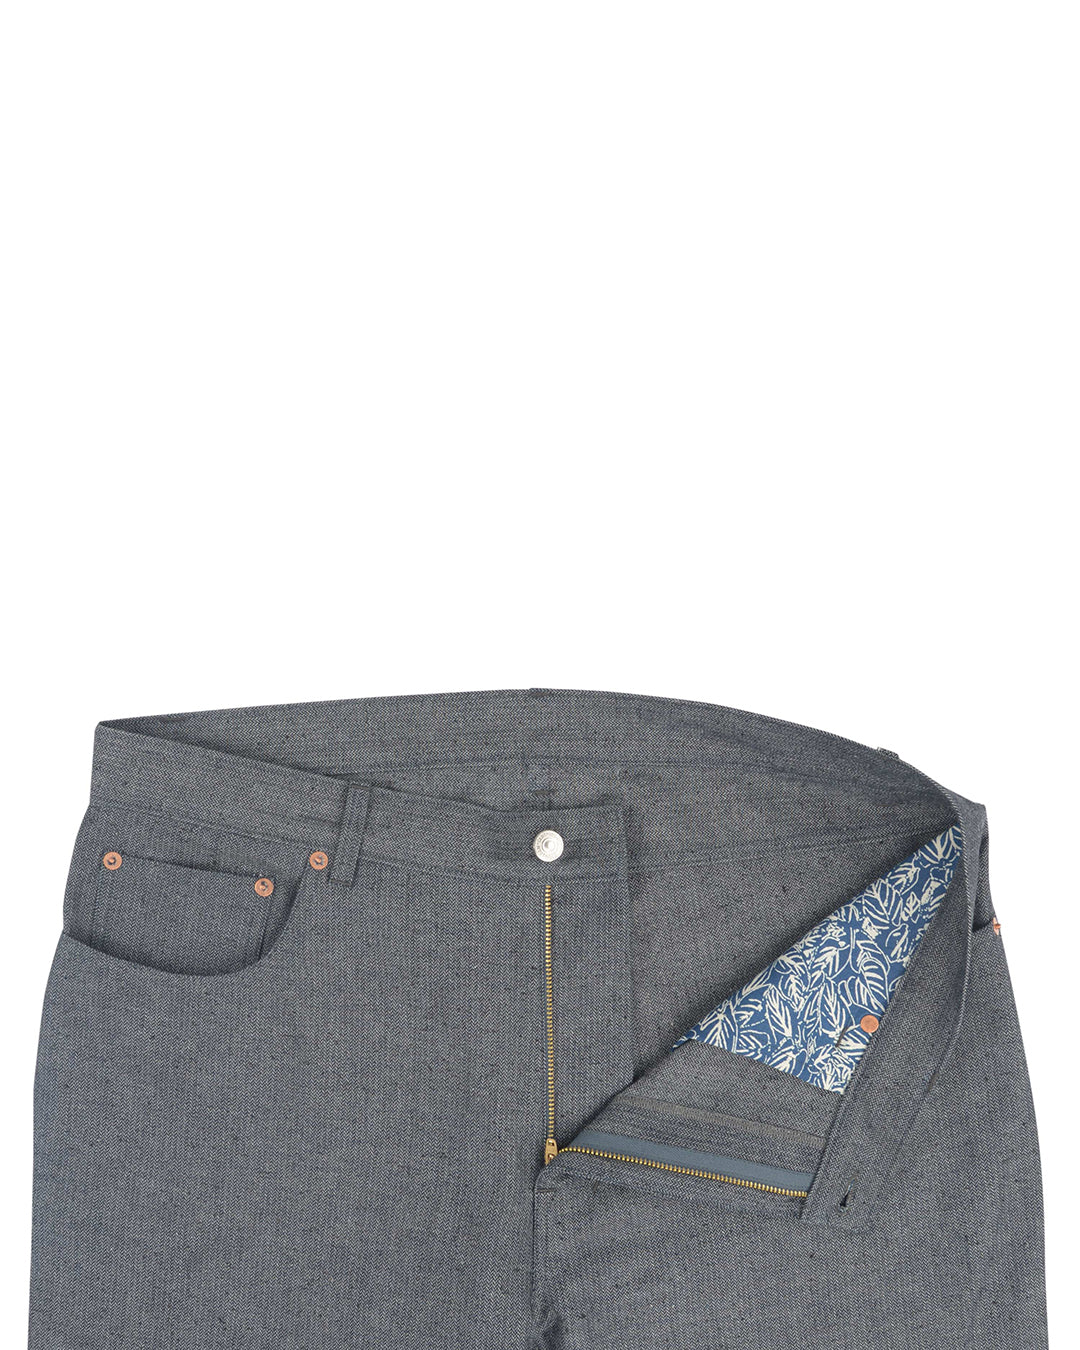 Front open view of custom broken slub jeans for men by Luxire in navy grey